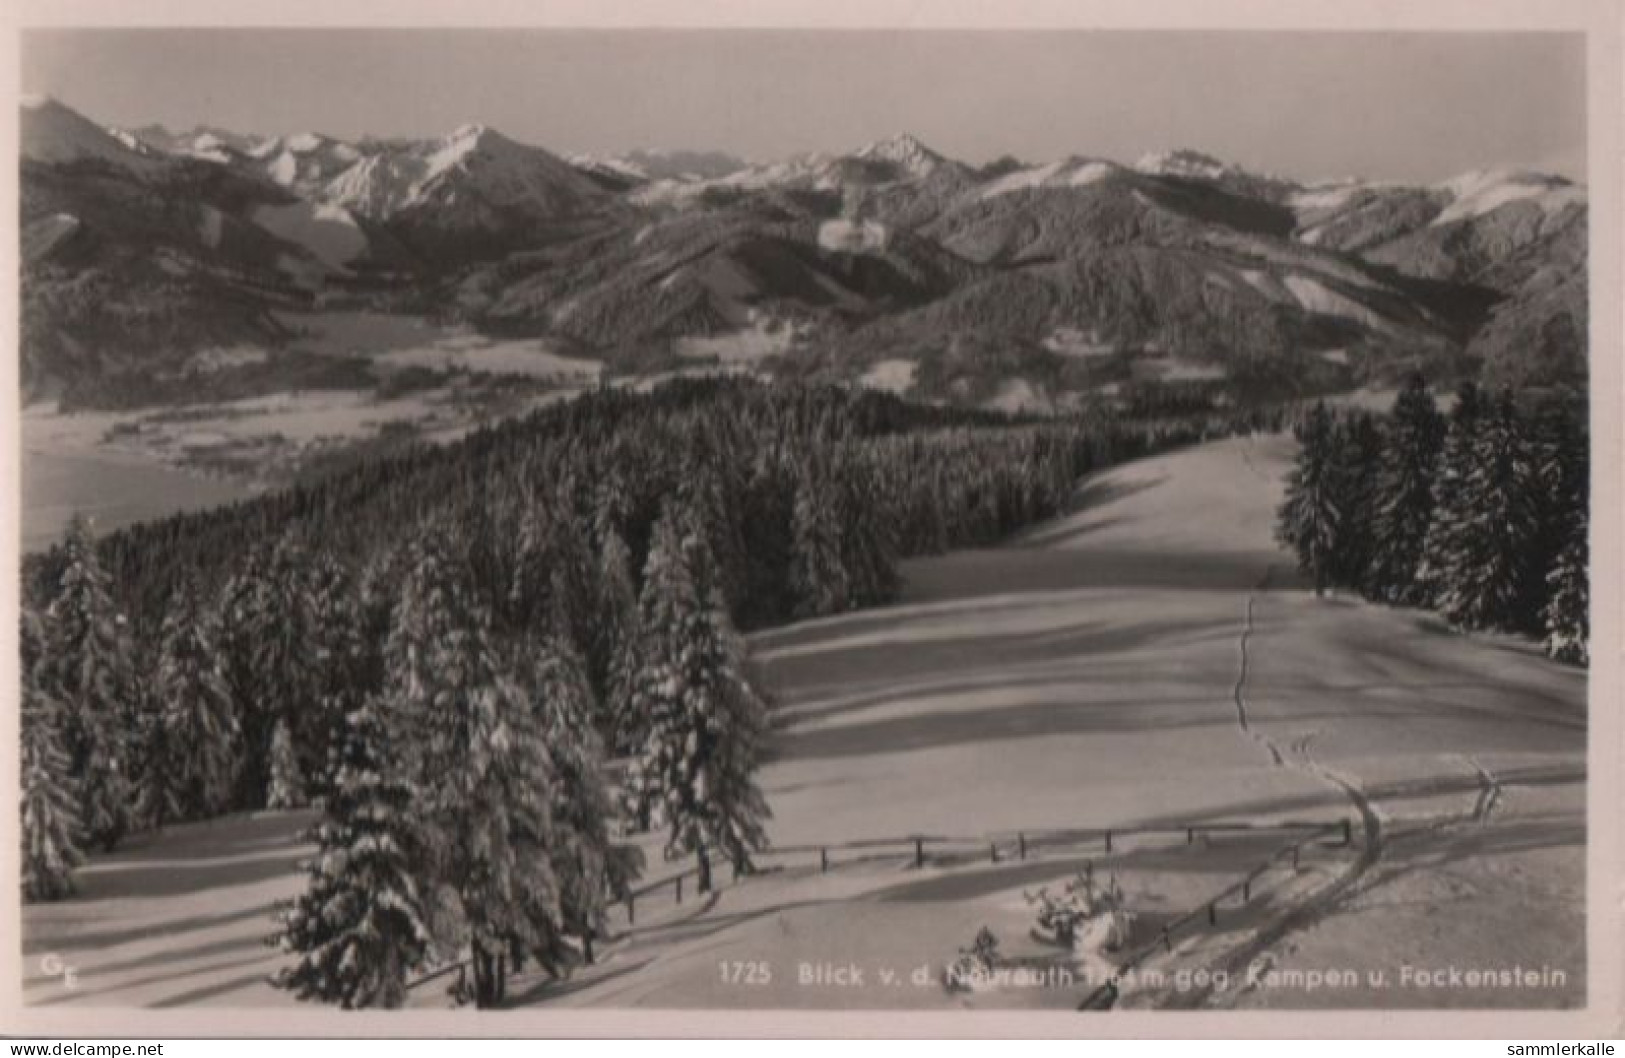 59422 - Kampenwand - Und Fockenstein V.d. Neureuth - 1954 - Chiemgauer Alpen